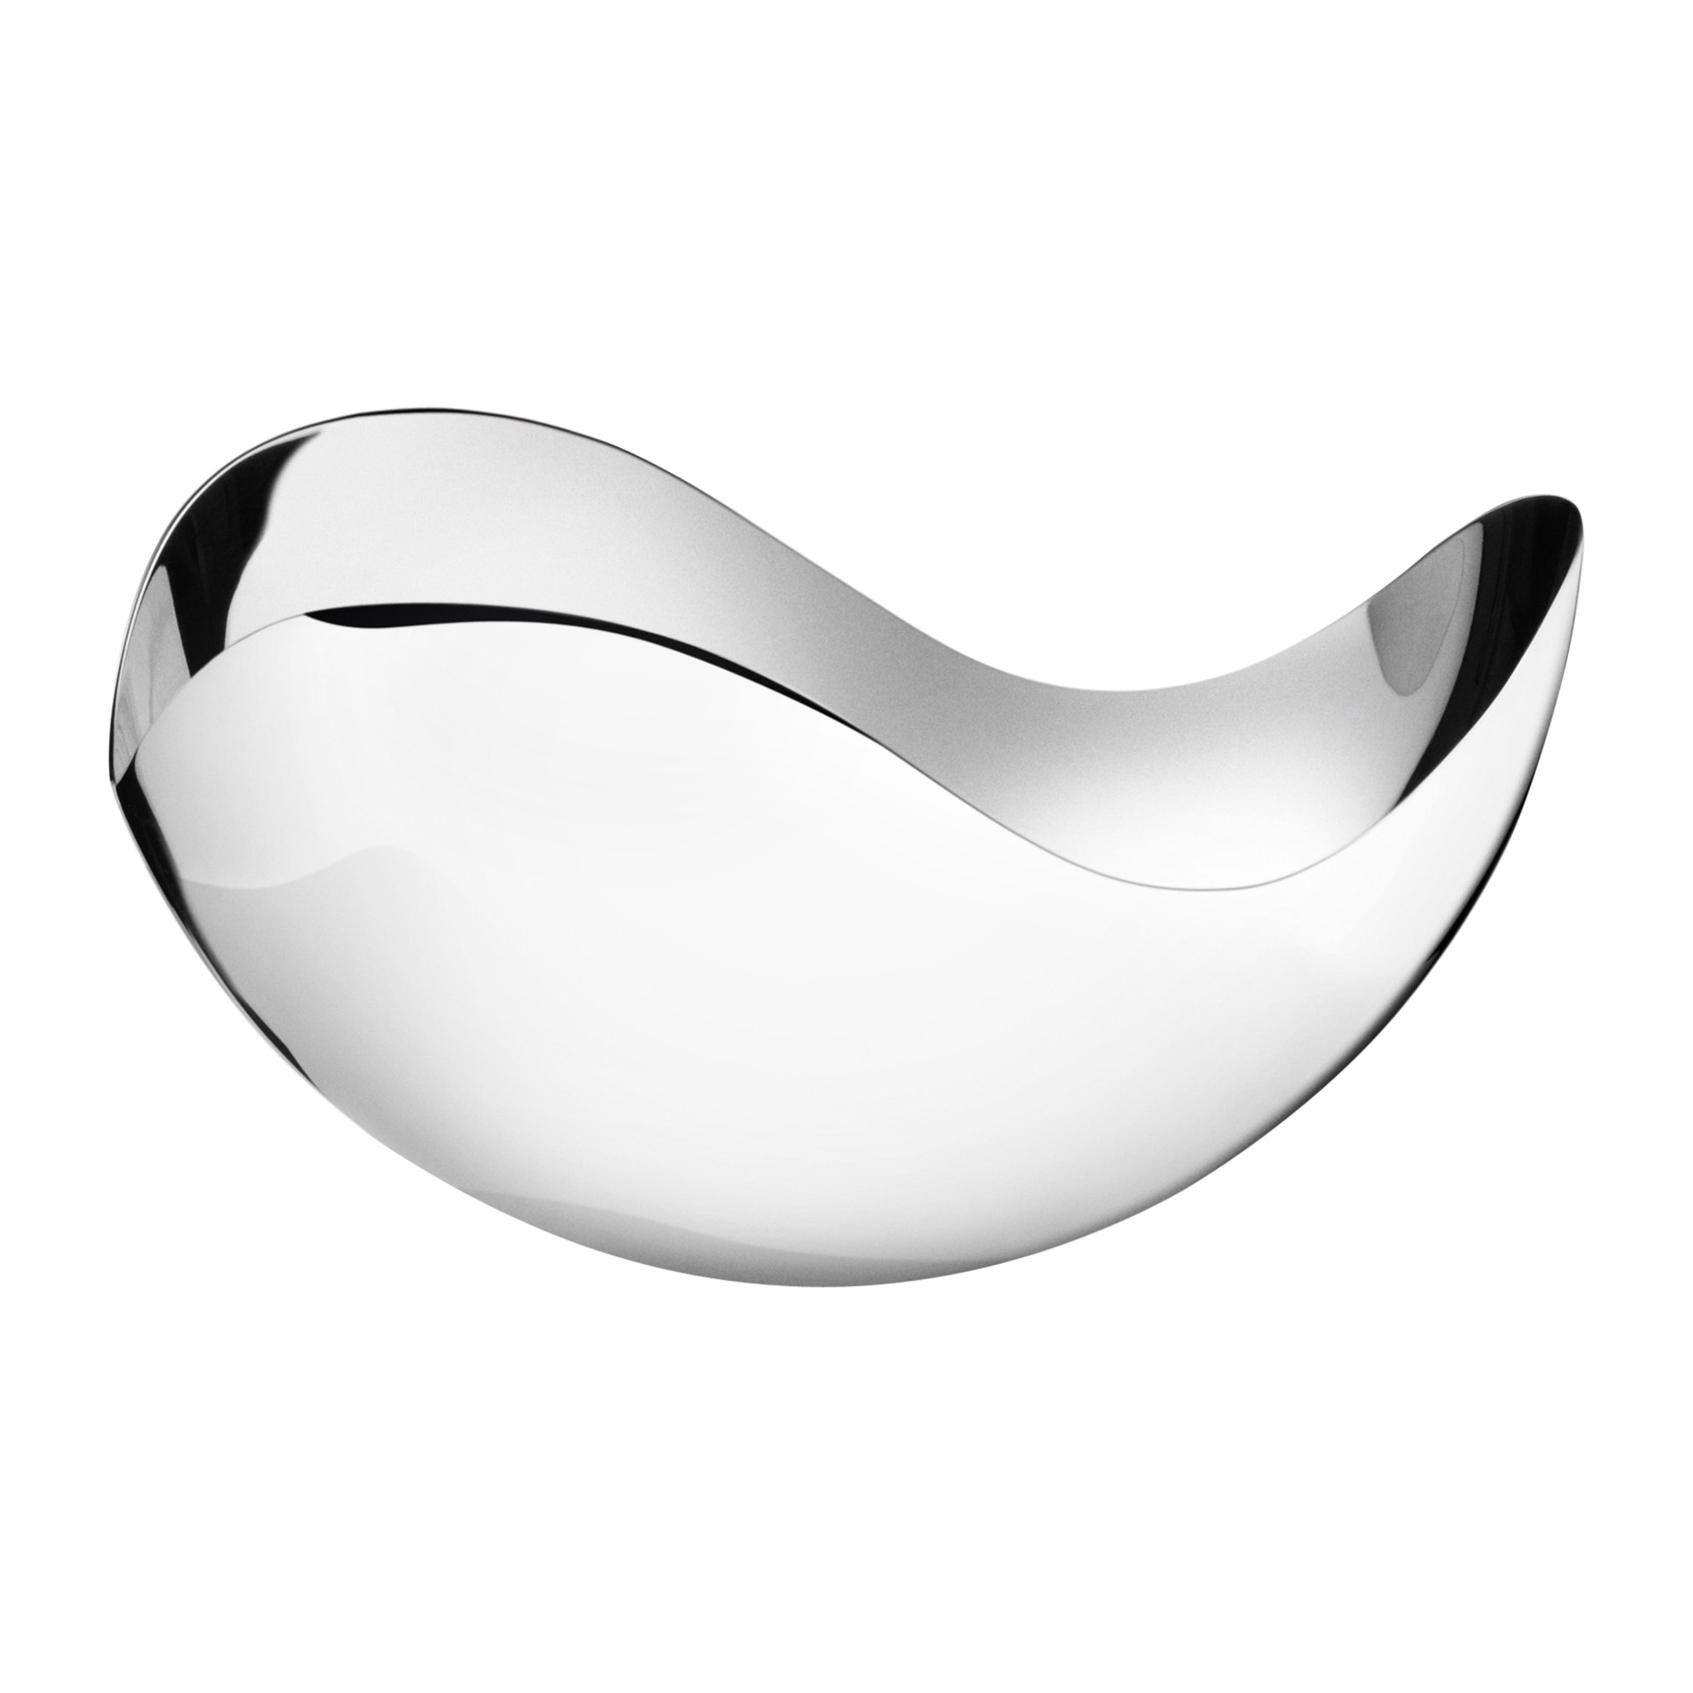 Georg Jensen Bloom Petite Bowl in Stainless Steel Mirror by Helle Damkjaer